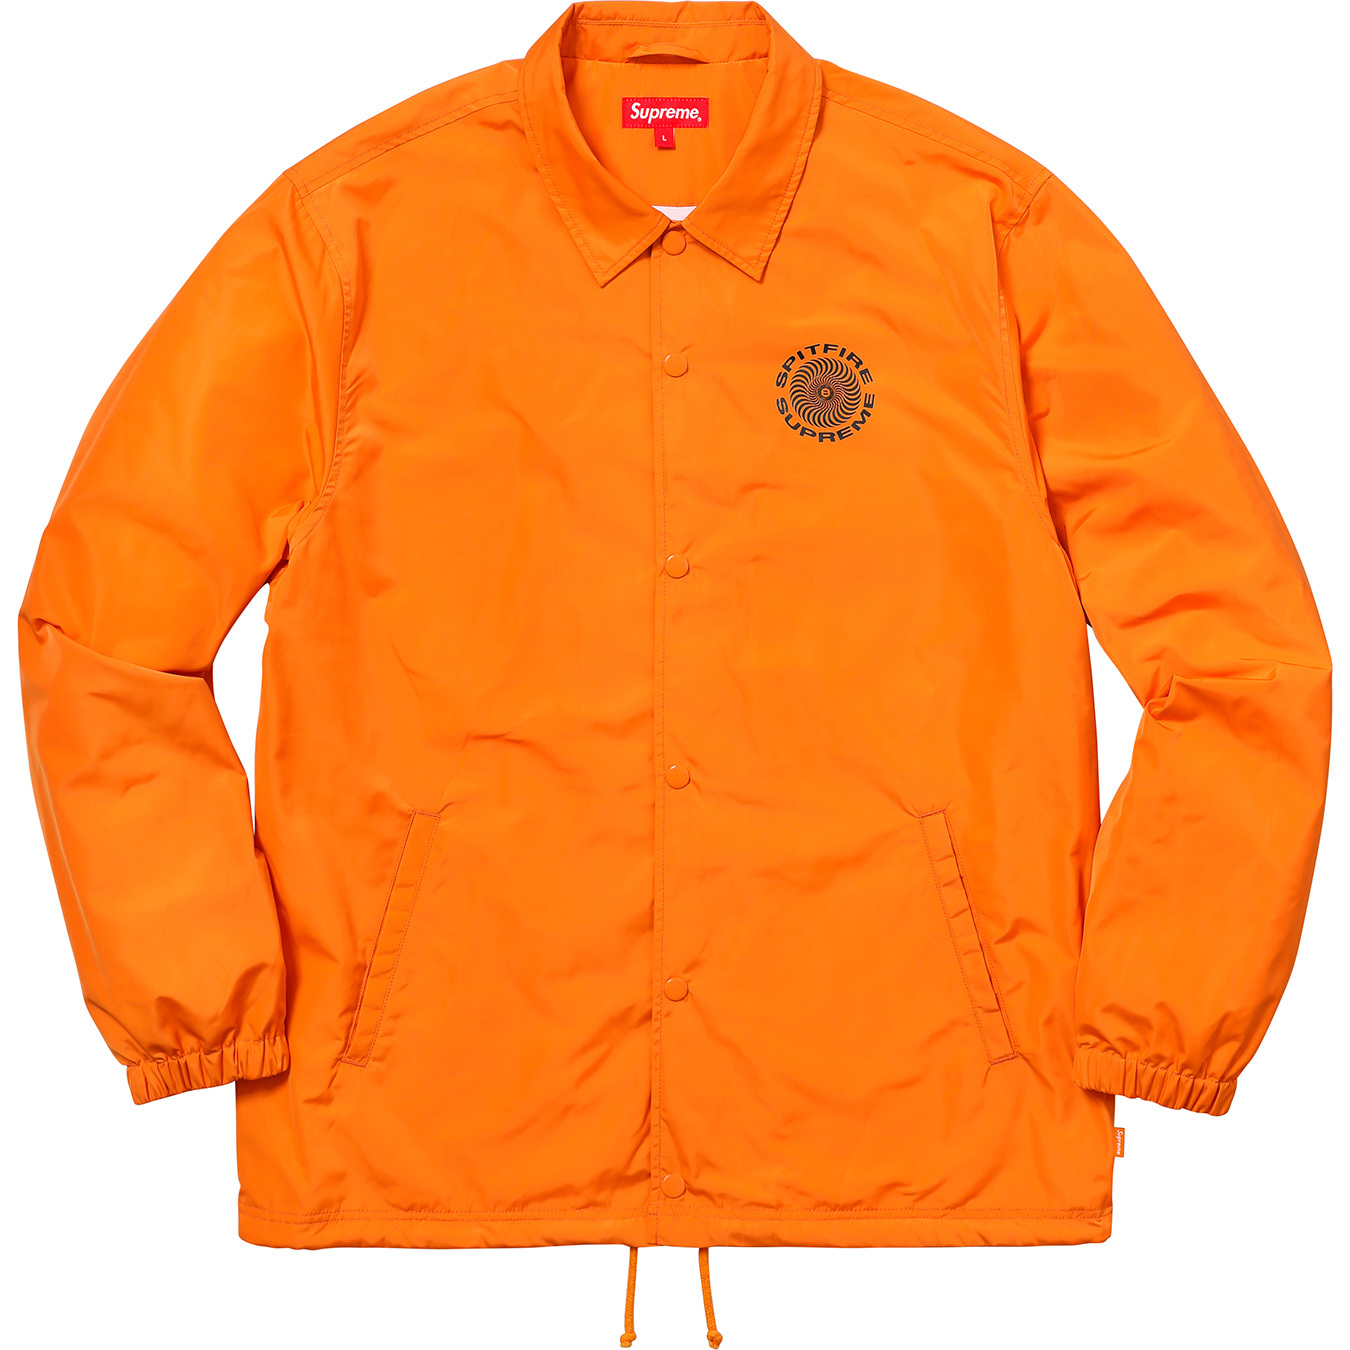 supreme coaches jacket orange喫煙はいたしません